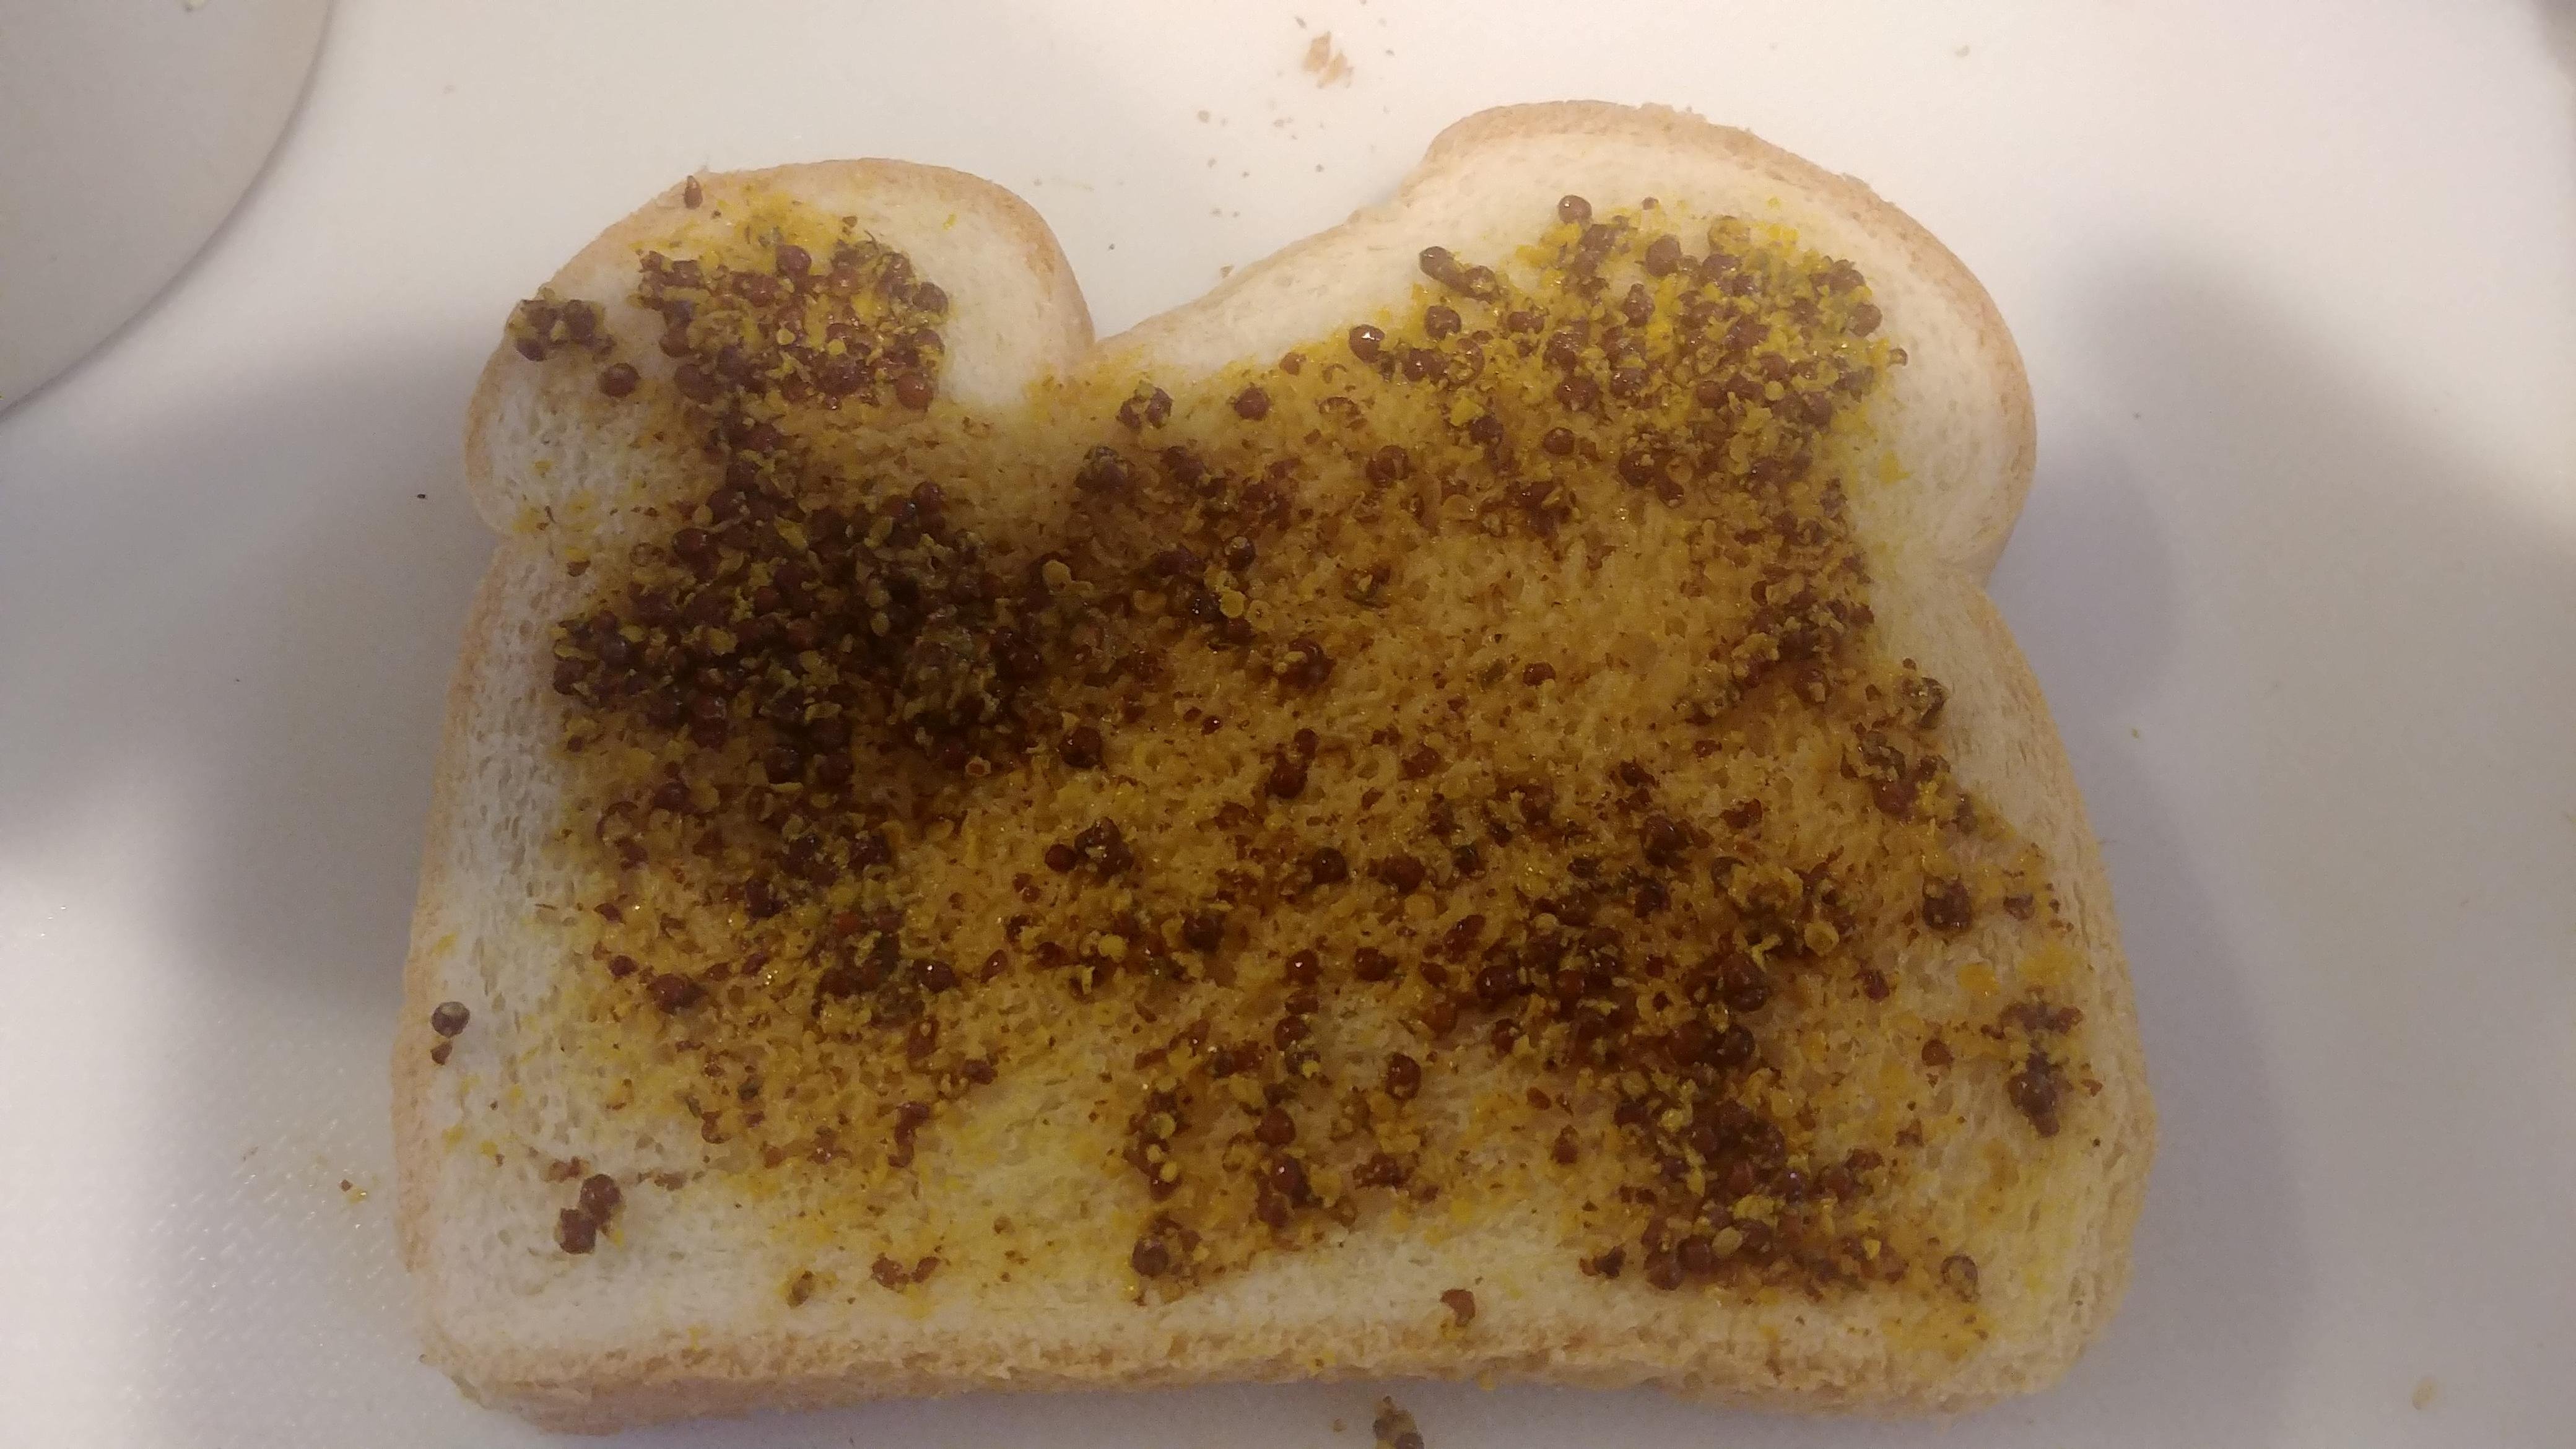 mustard on bread.jpg